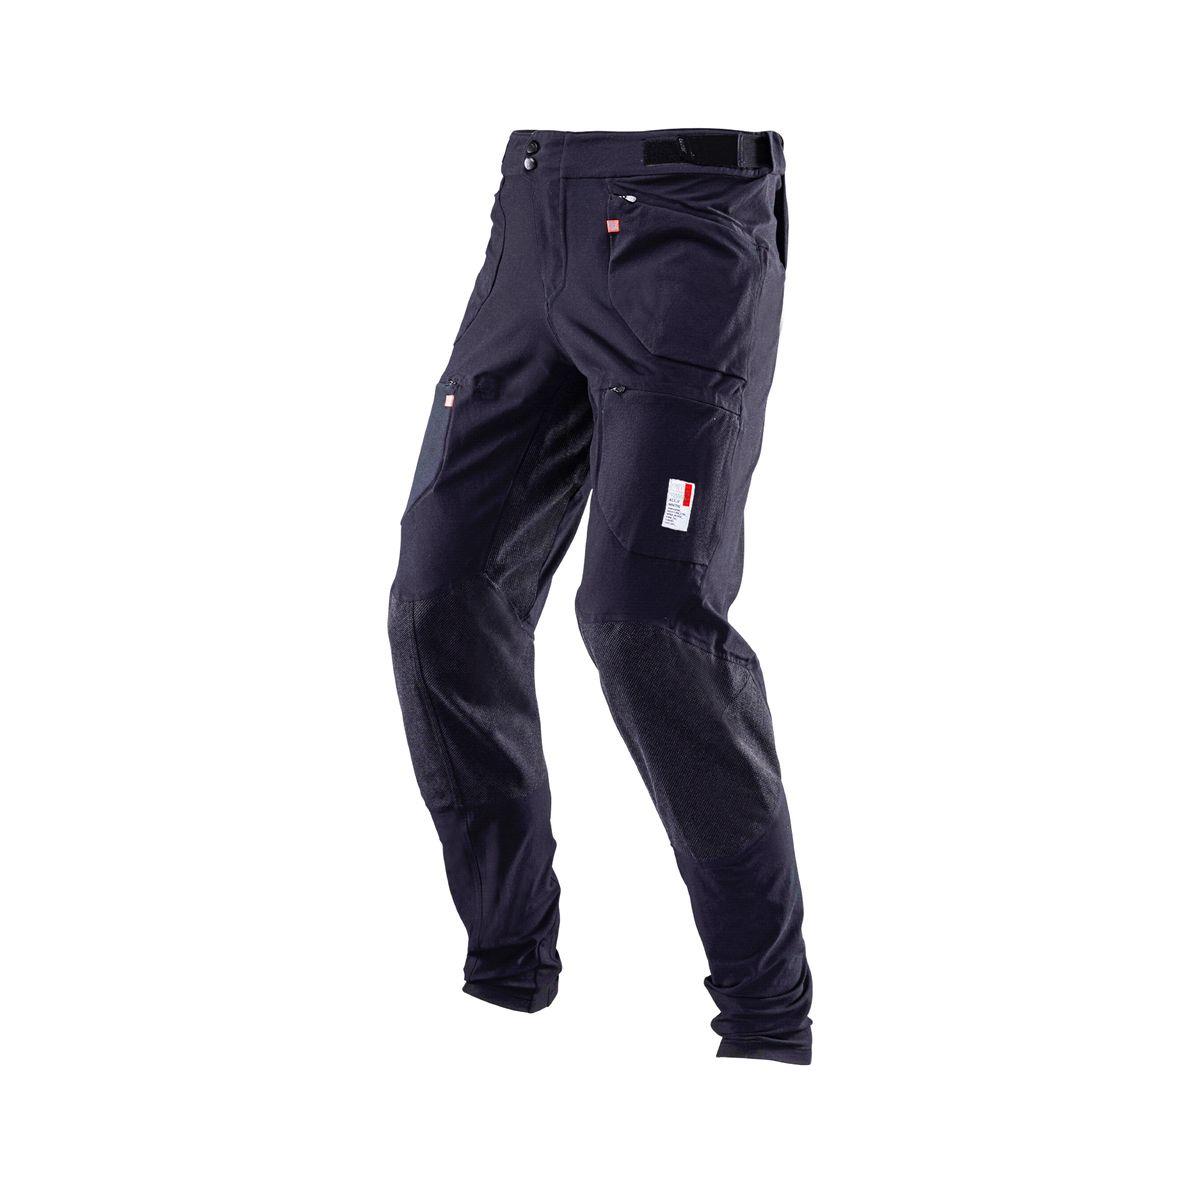 Pantalones MTB Allmtn 4.0 Largos Negro Talla XS